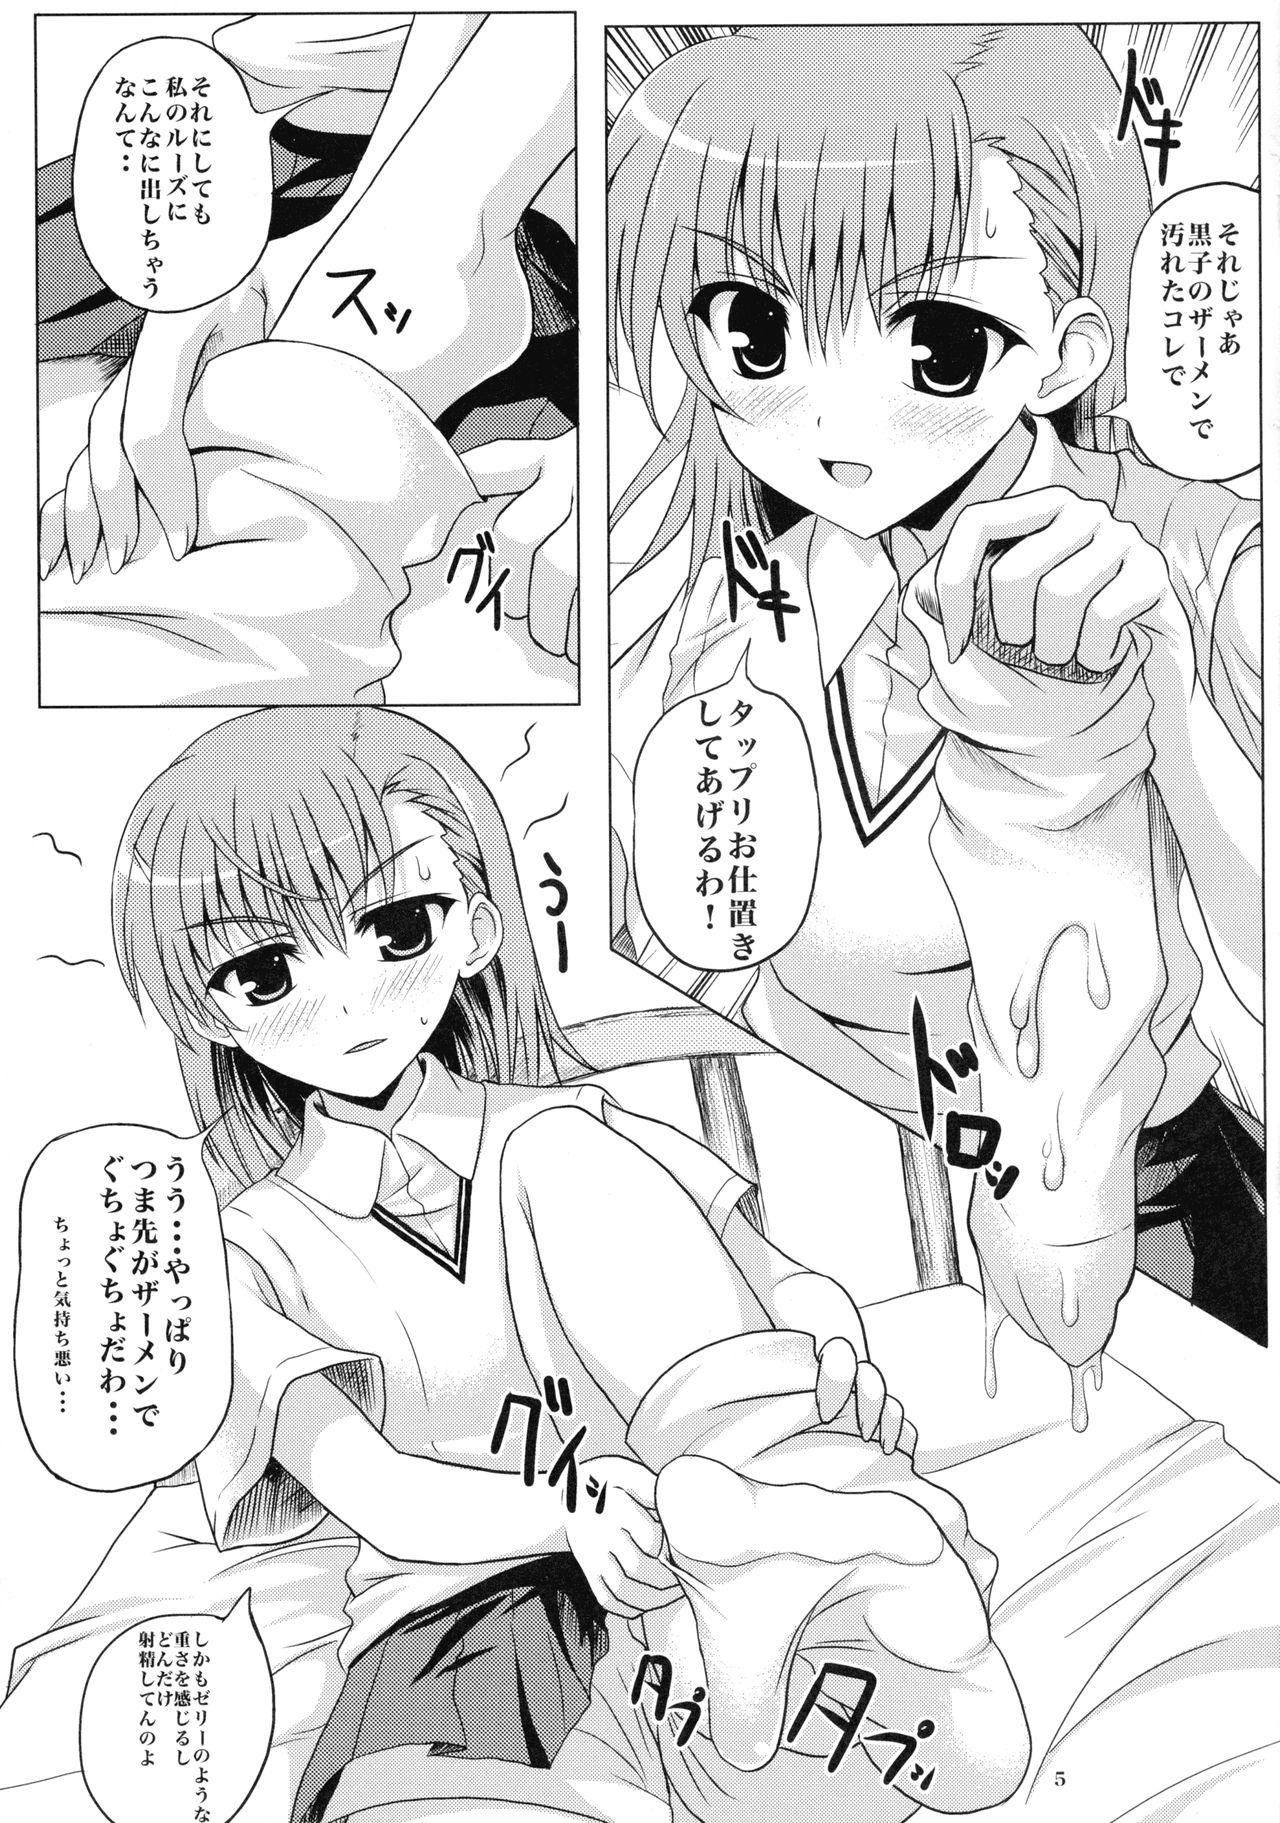 Stripping Toaru Biyaku no Chou Saiinzai 2 - Toaru majutsu no index | a certain magical index Wives - Page 5